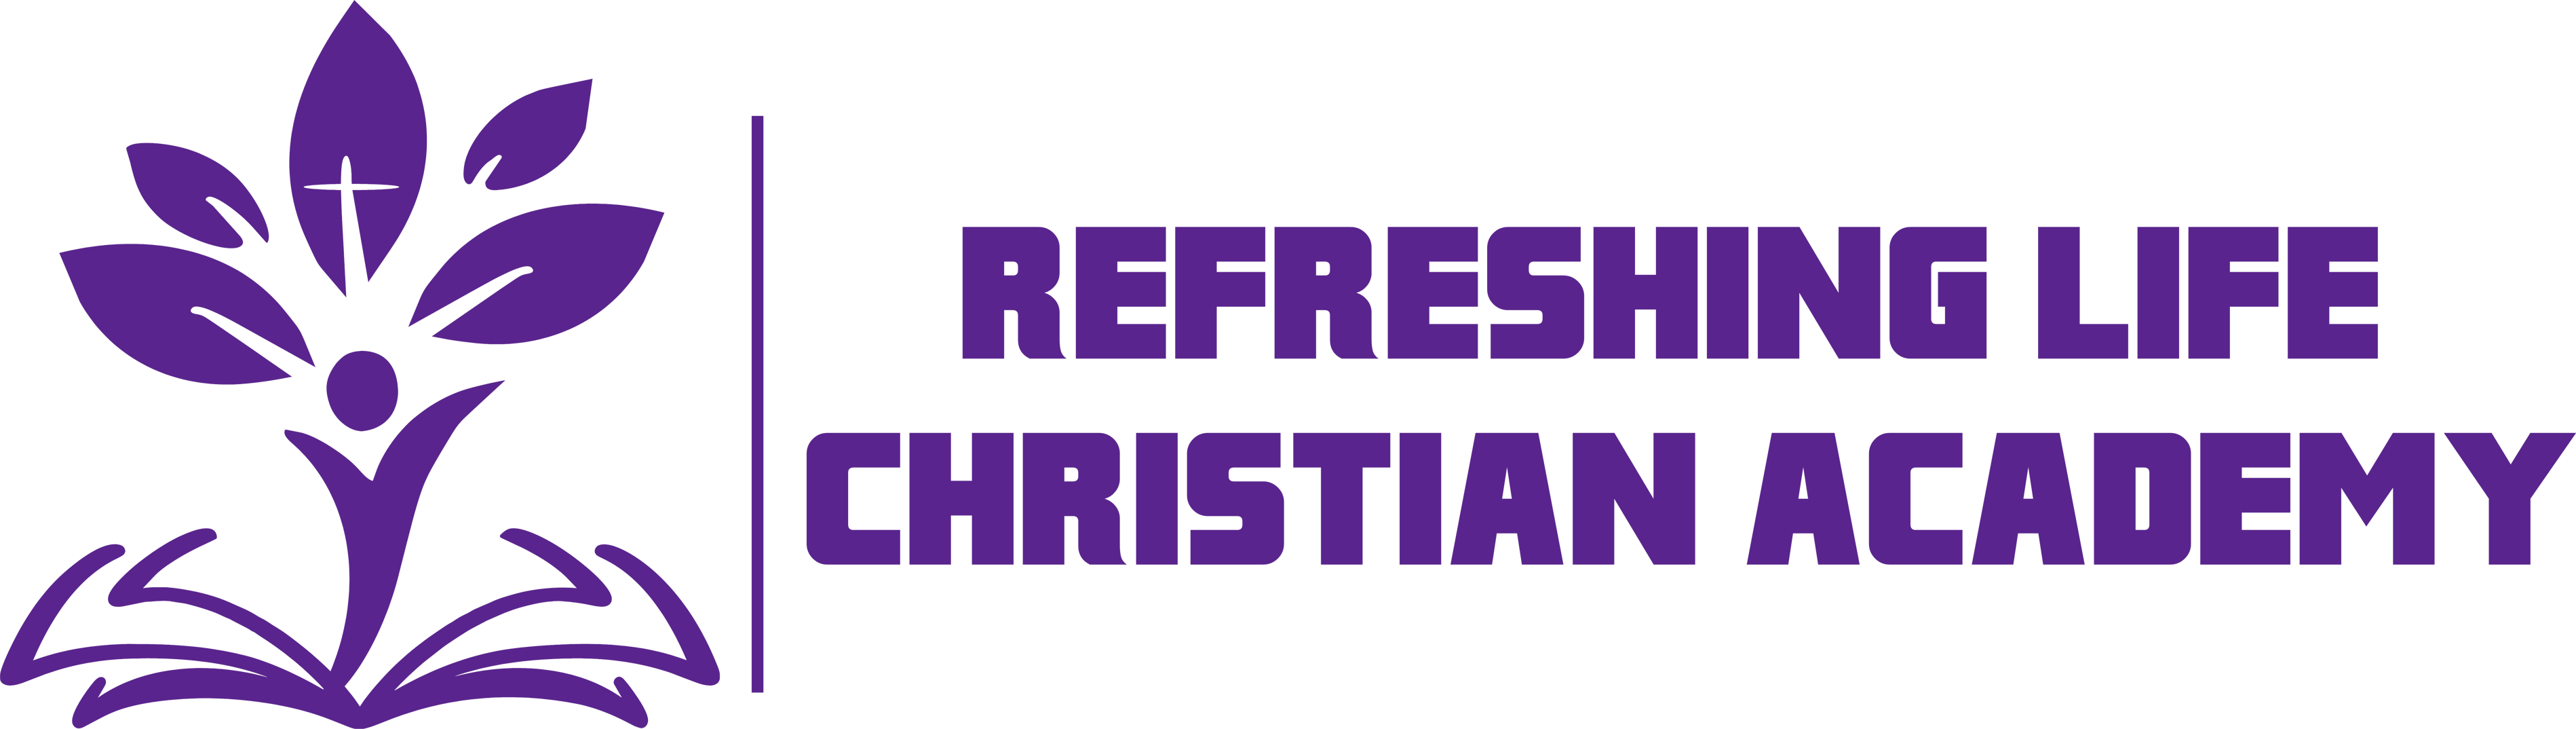 Refreshing Life Christian Academy